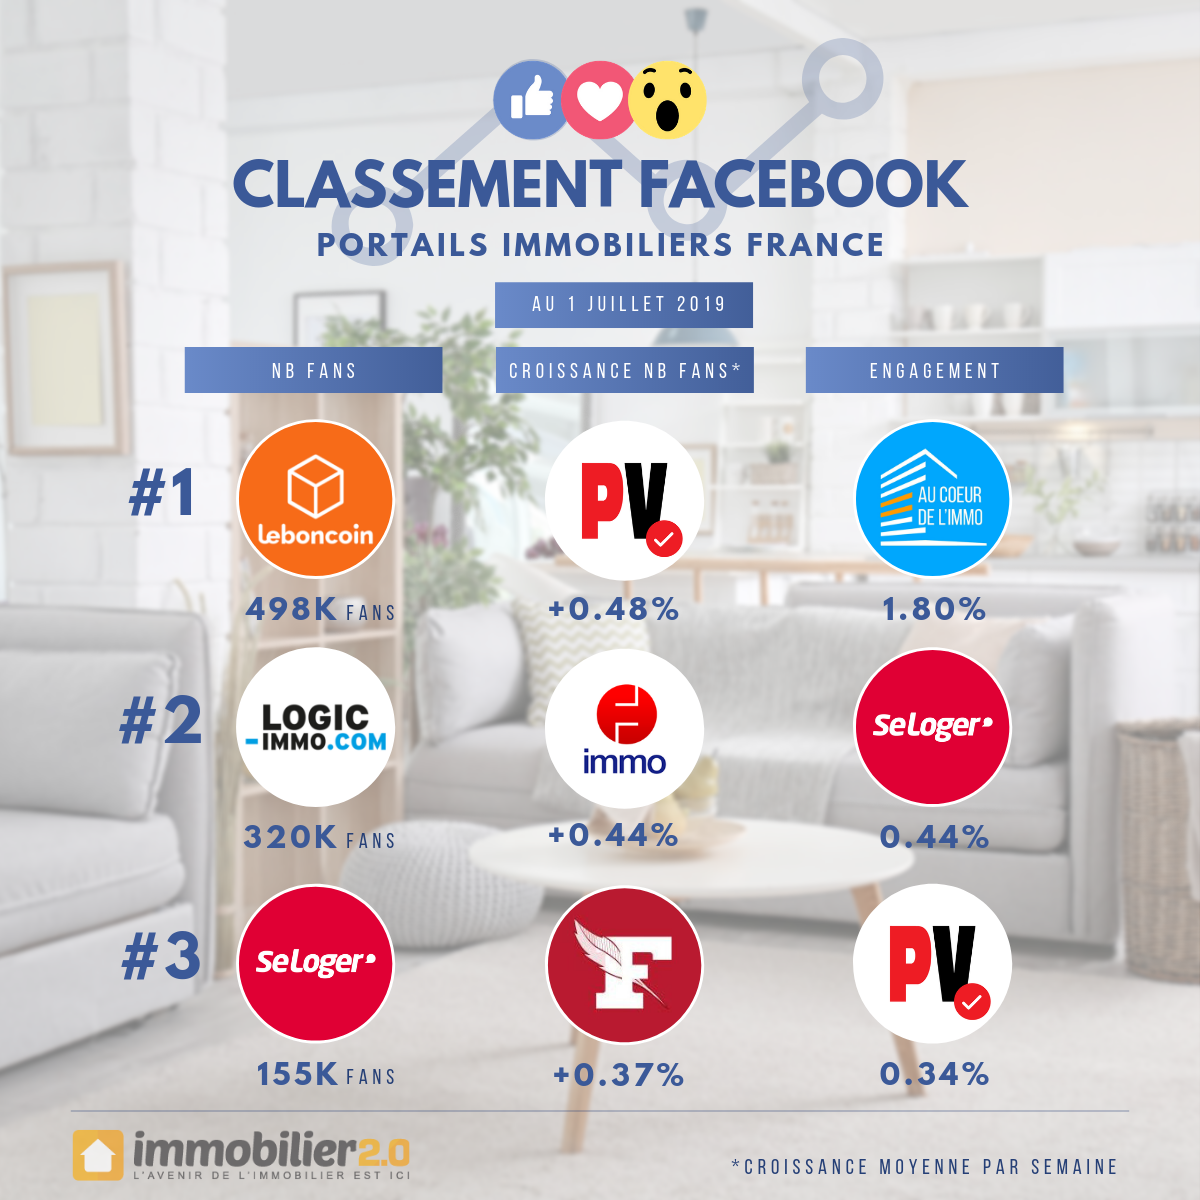 Classement Facebook Portails Immobiliers France Juillet 2019